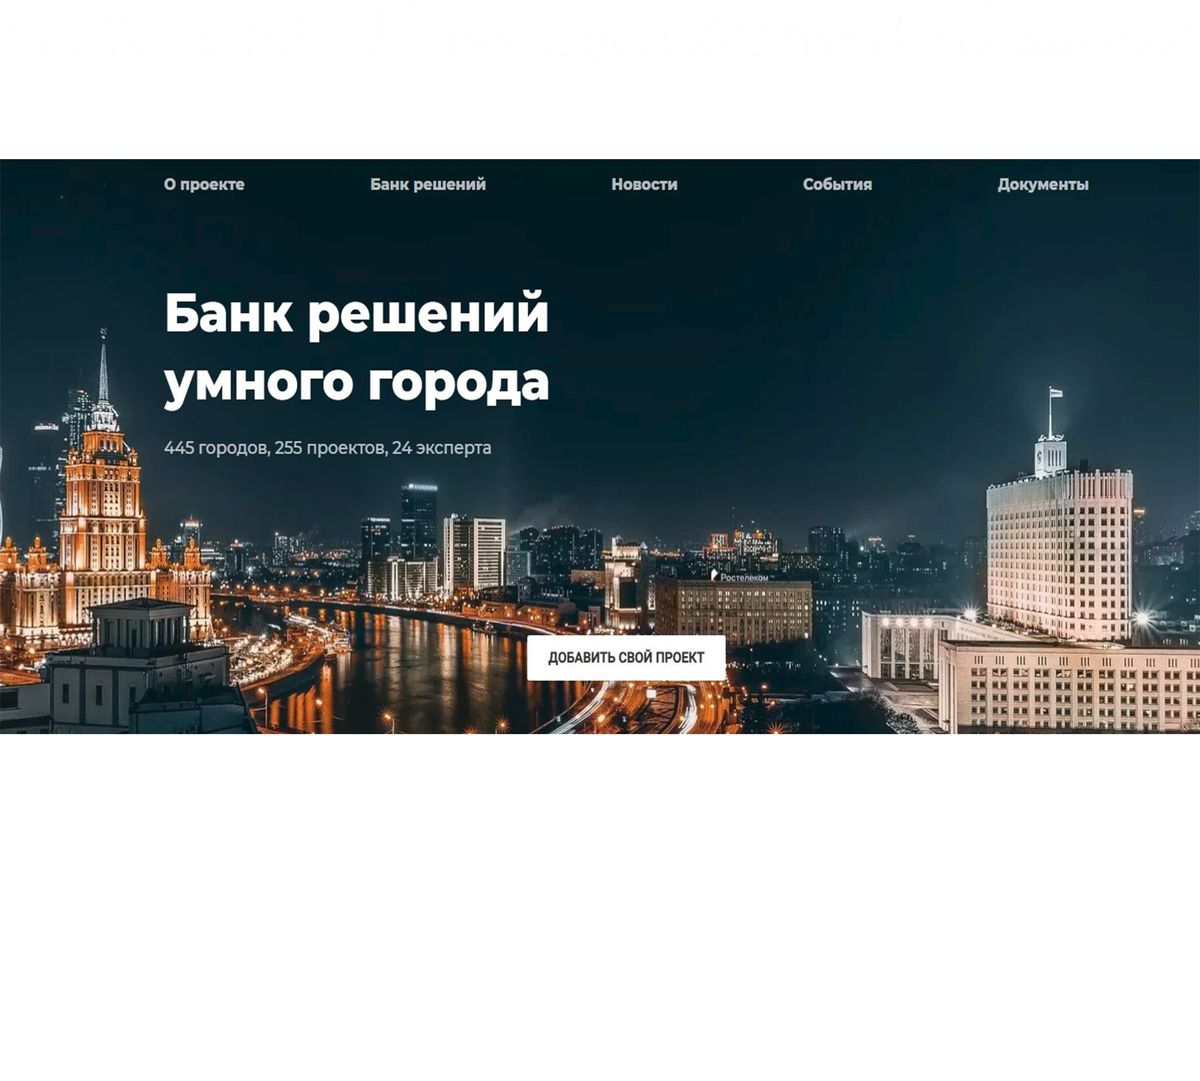 Энергосервисный проект АО «Газпром энергосбыт Тюмень» включён в Банк решений «Умного города»